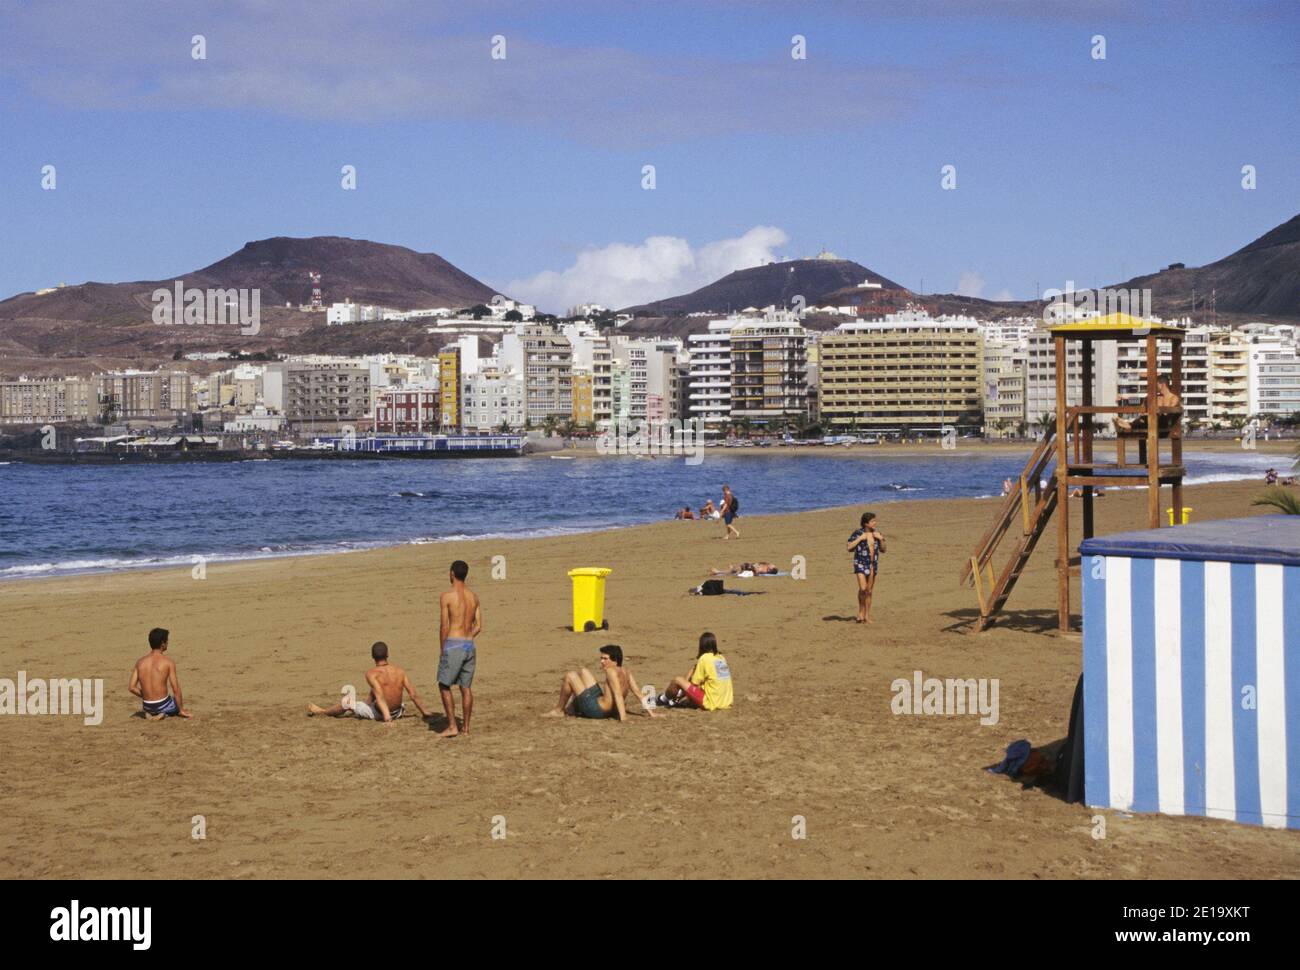 Playa de las Canteras in Las Palmas de Gran Canaria, Gran Canaria Island, Canary Islands, Spain Stock Photo